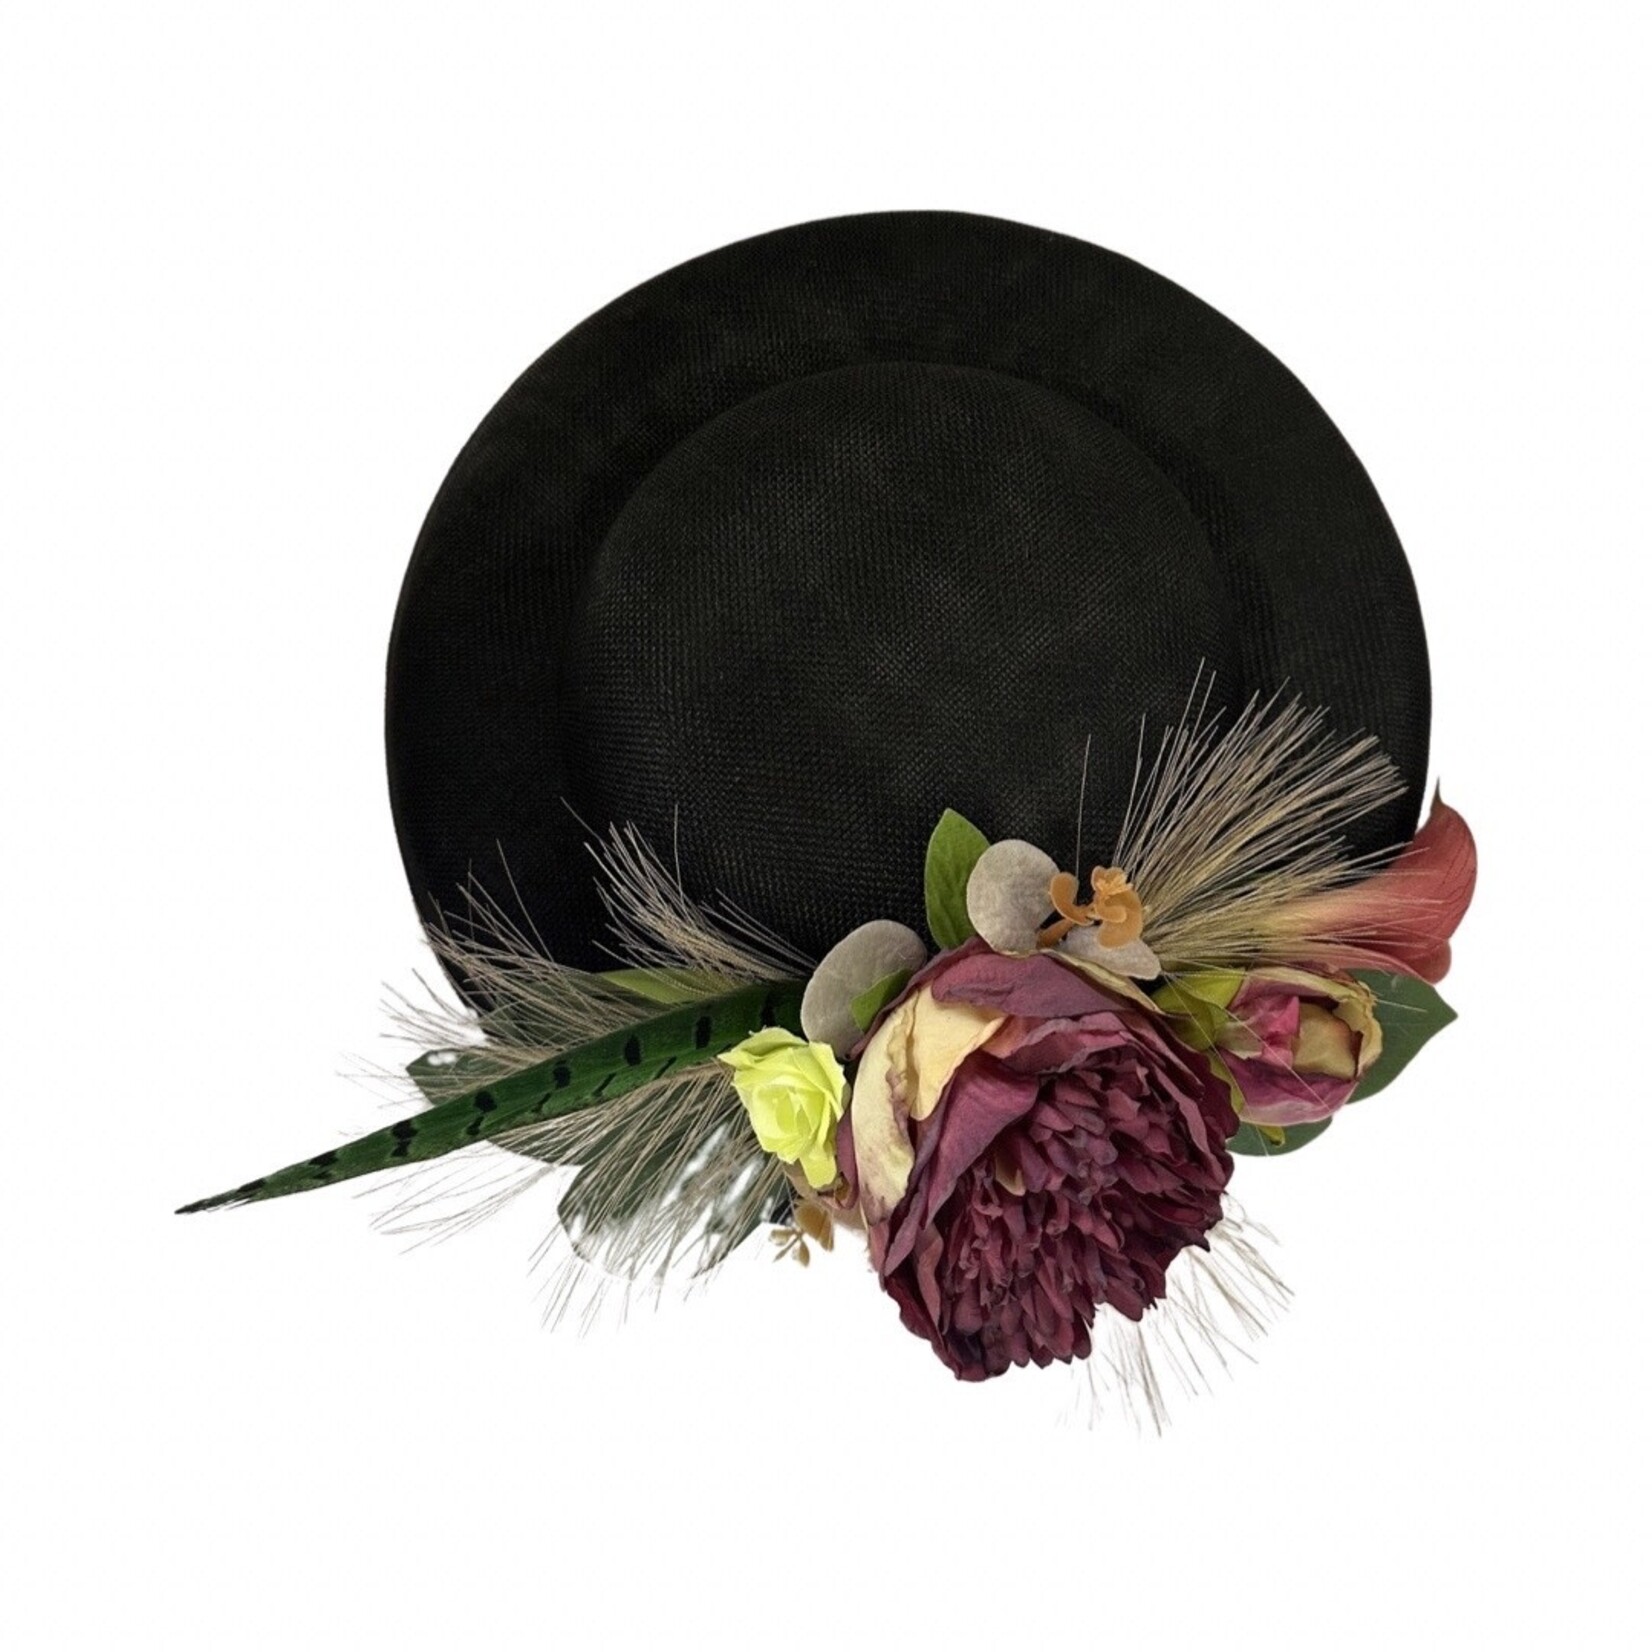 OPO Burgundy Floral w/ Large Black Hat Fascinator